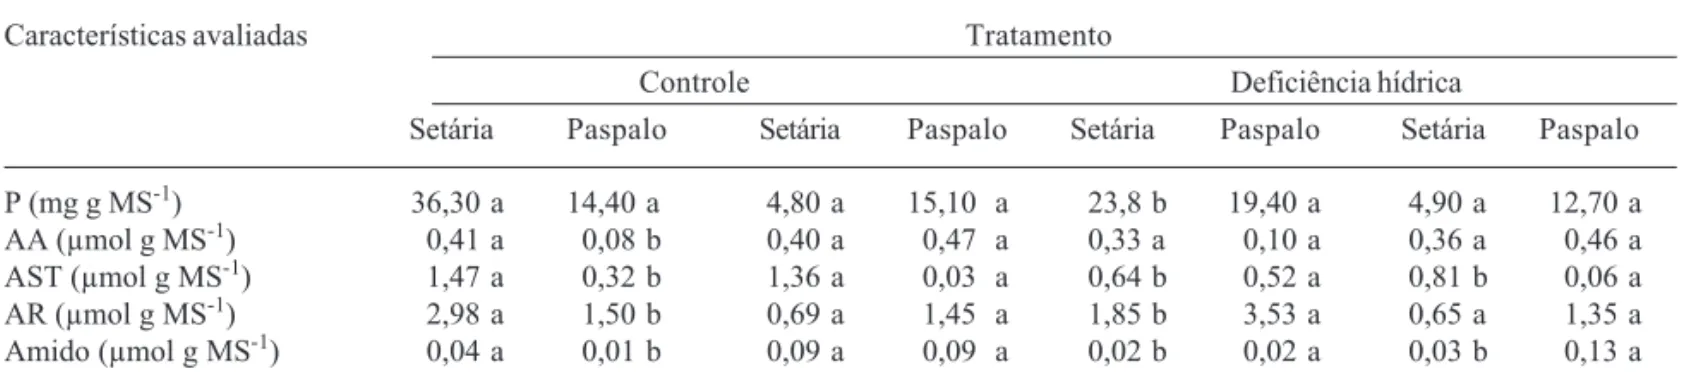 Tabela 3. Características bioquímicas de Setaria anceps (setária) e Paspalum paniculatum (paspalo) em plantas controle e plantas submetidas a 11 dias de deficiência hídrica.